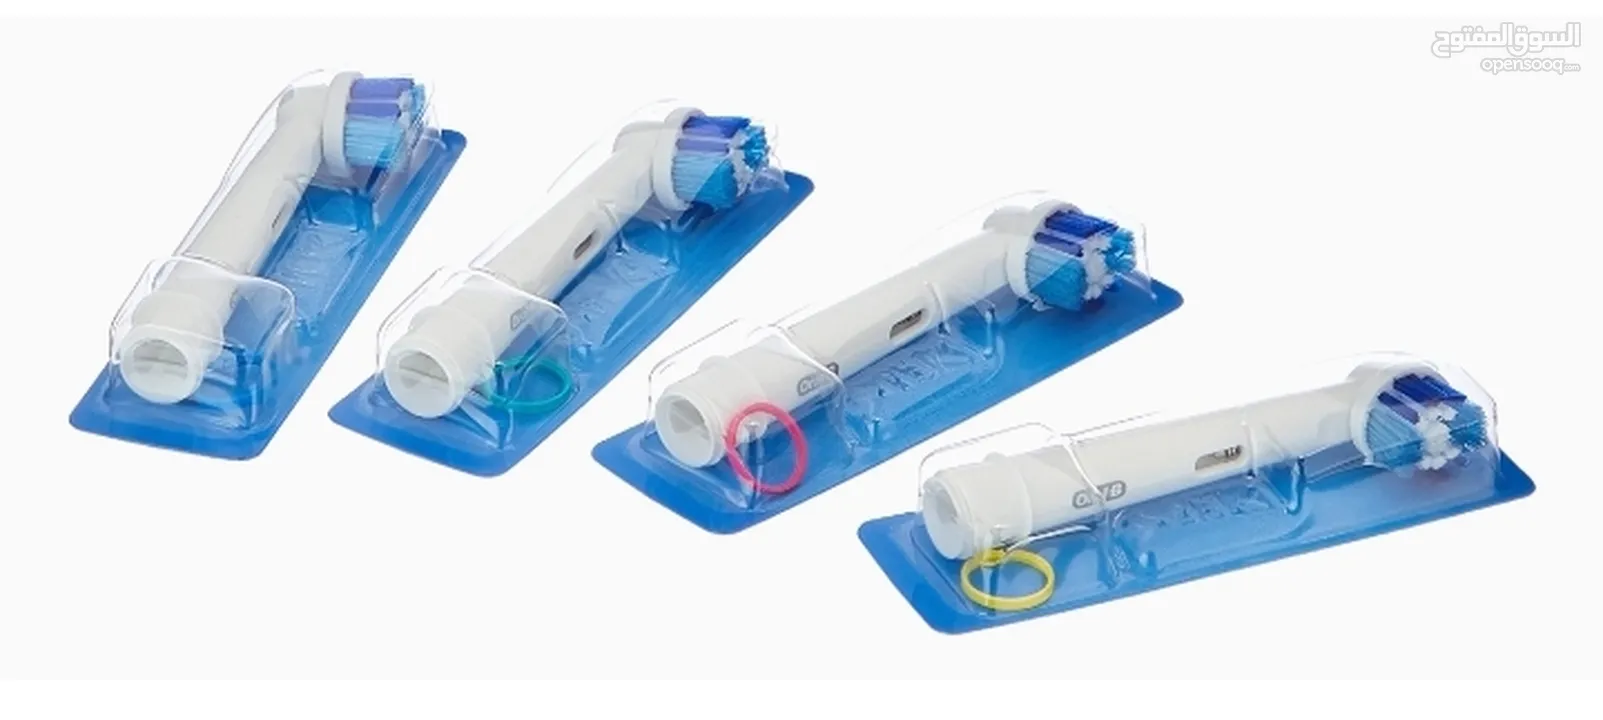 فرش أسنان أورال-بي كروس أكشن البديلة للحماية من البكتيريا (8 قطع) فرشاة أسنان كهربائية